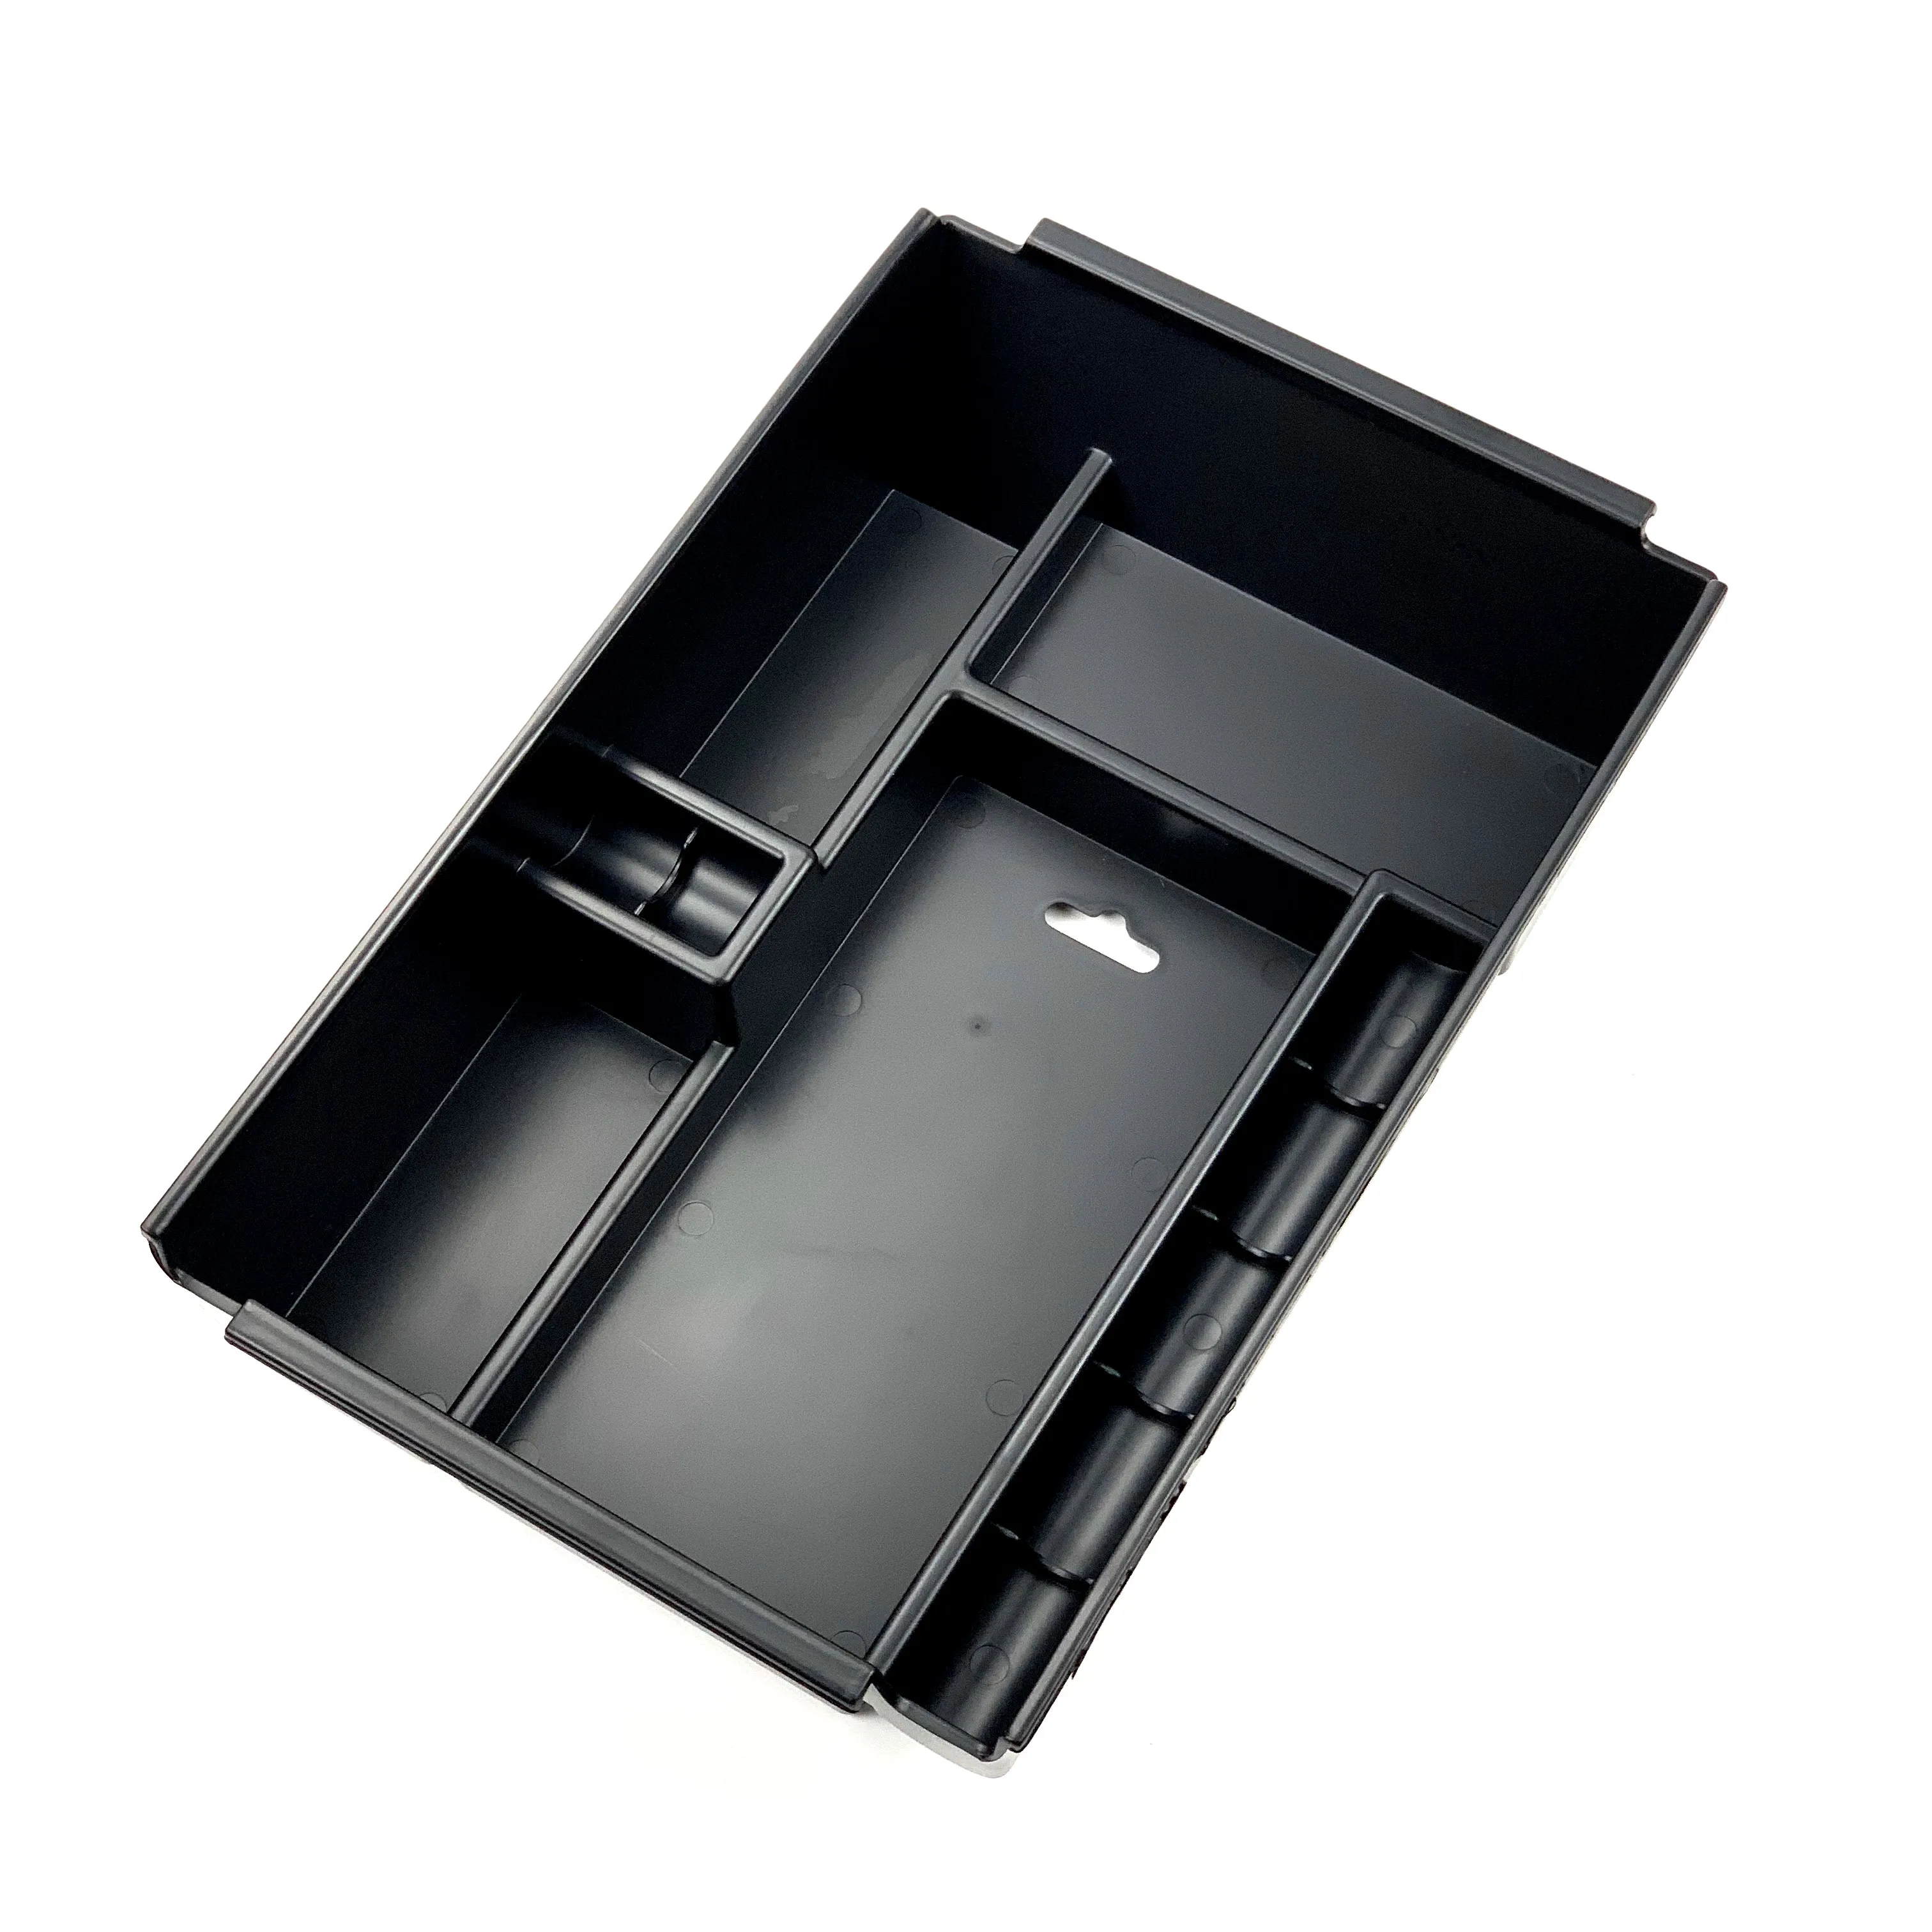 

Car Central Armrest Box Storage Car Organizer Accessories for Ford F150 2013-2020 F-150 Raptor LOBO XL XLT All Model